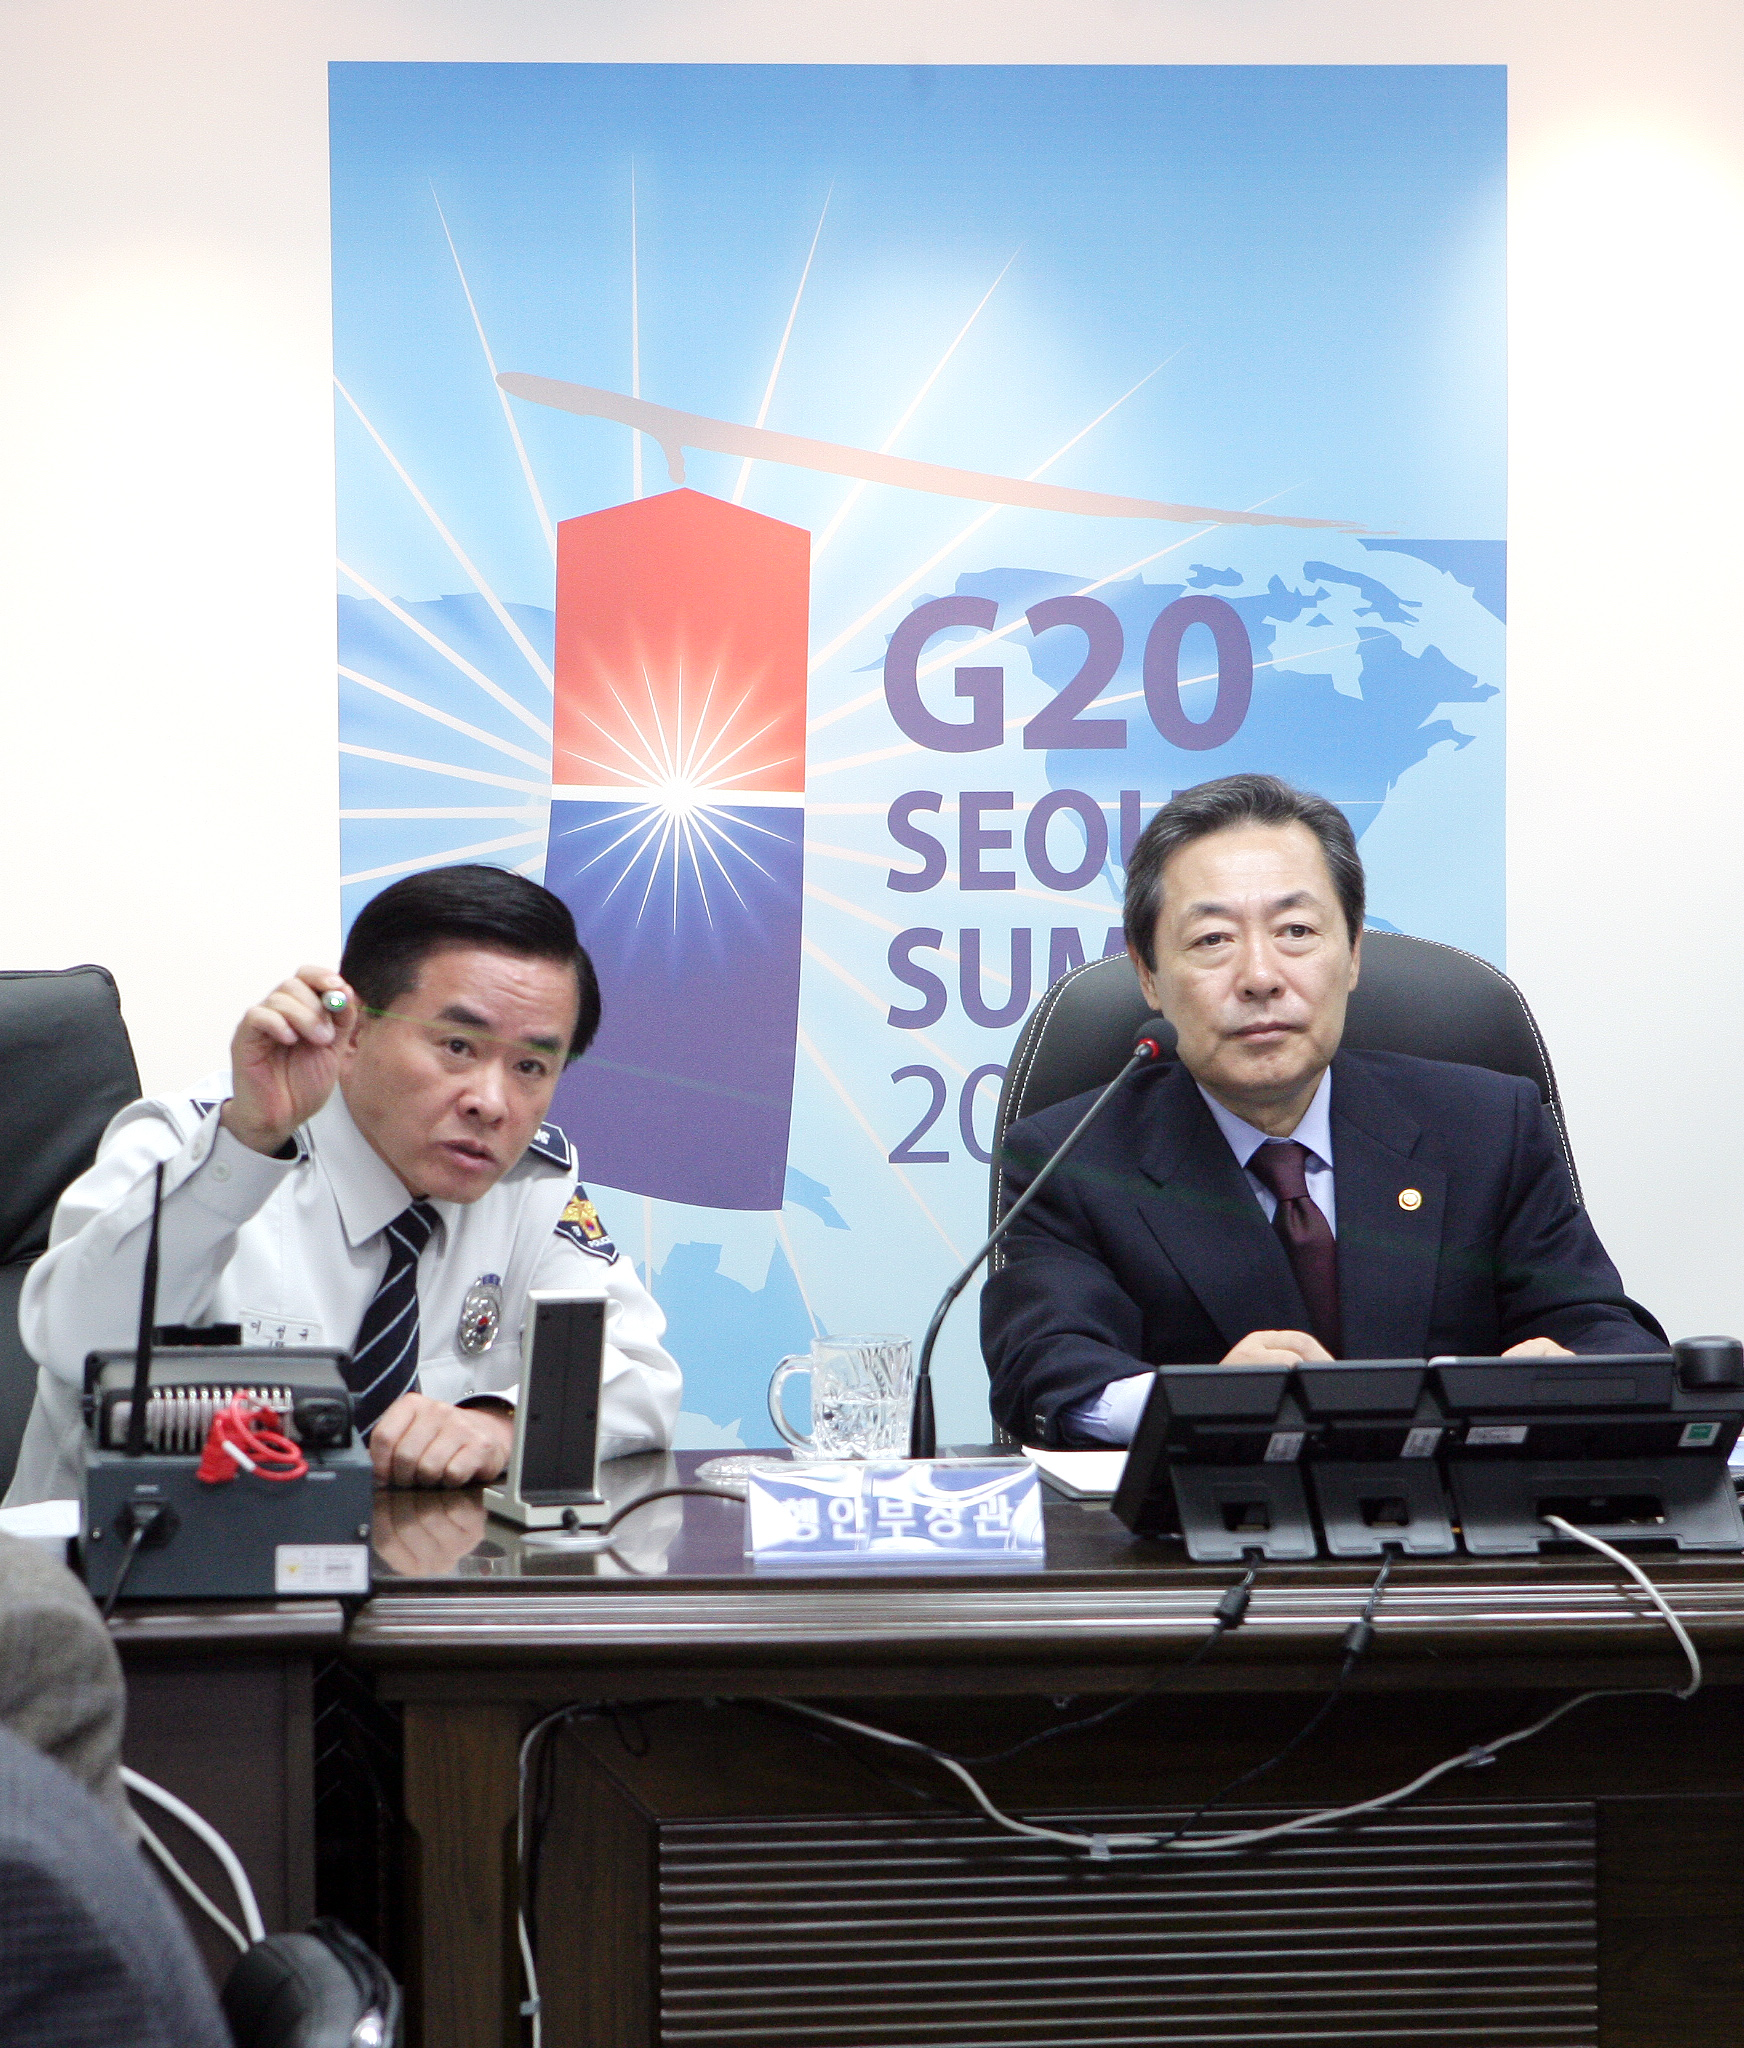 맹형규 장관, G20 정상회의 준비상황 현장 점검